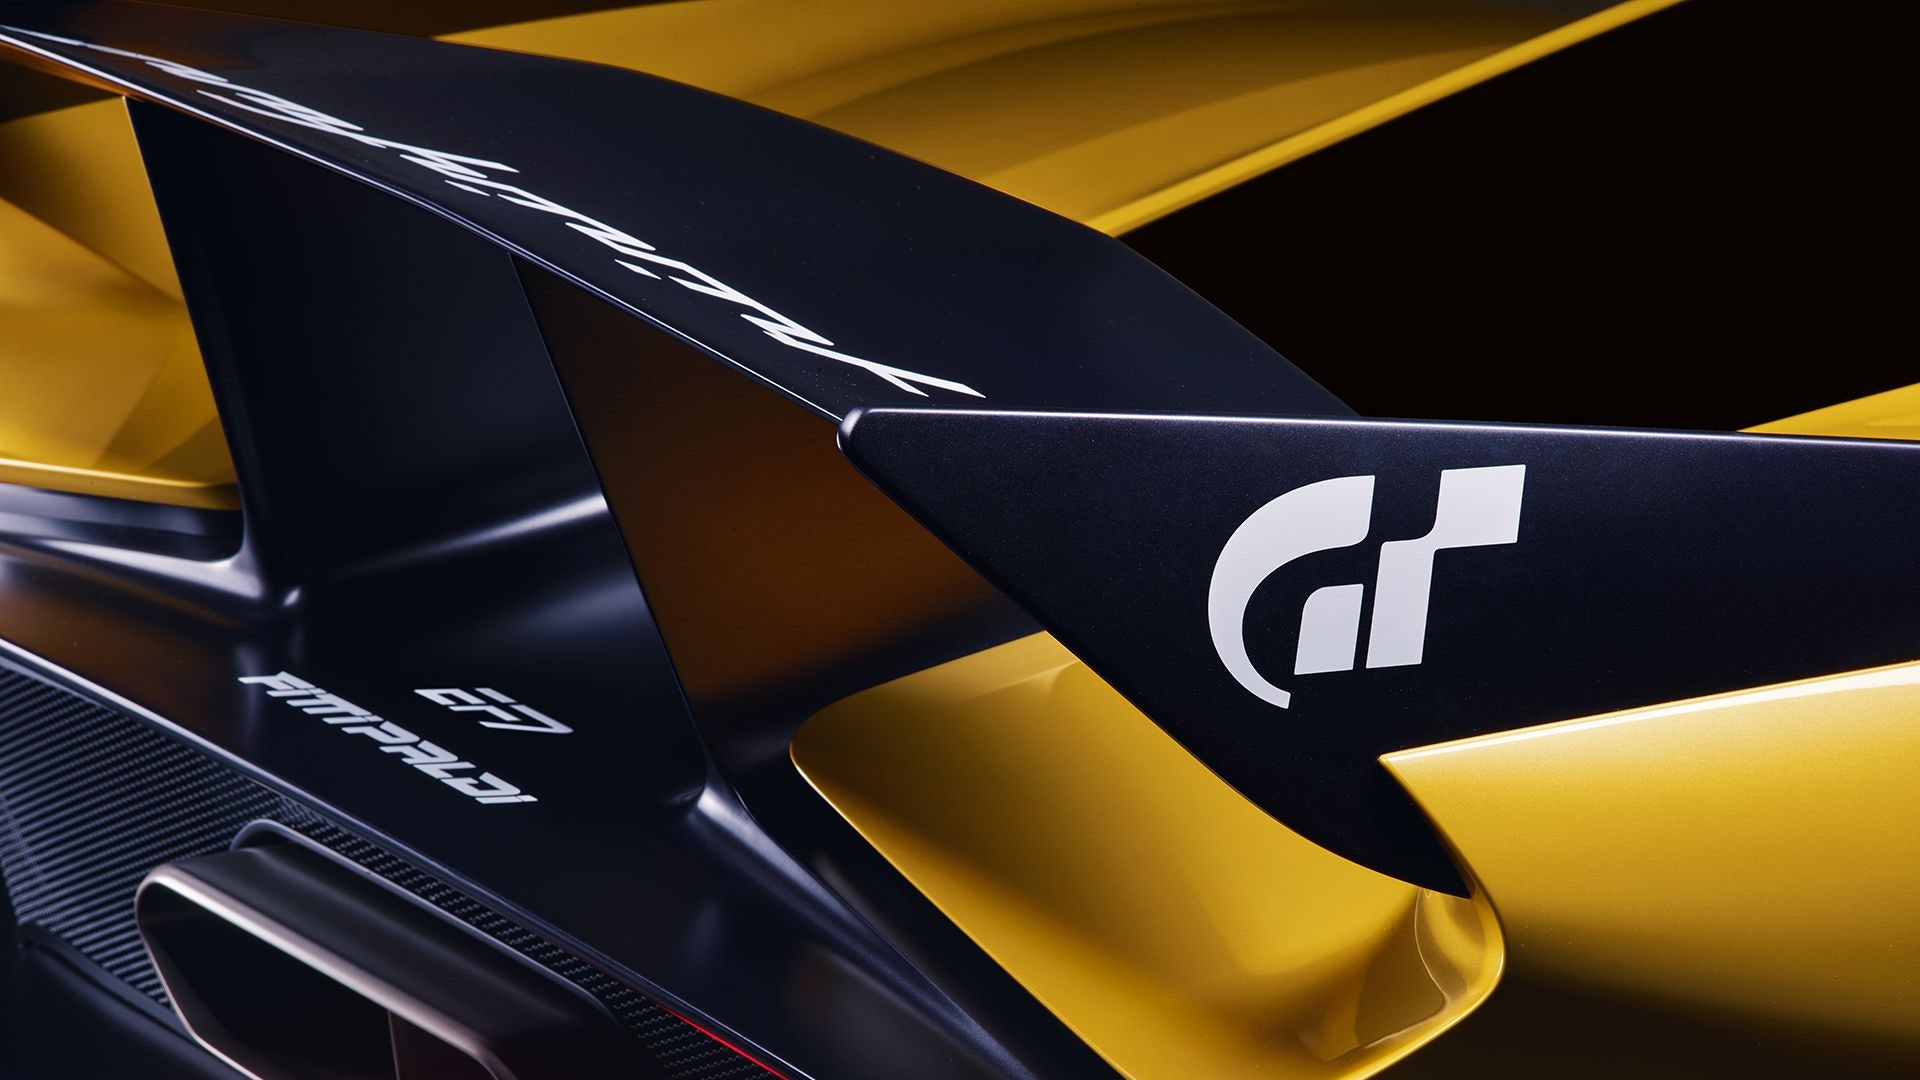 Fittipaldi Ef7 Vision Gran Turismo Wallpapers